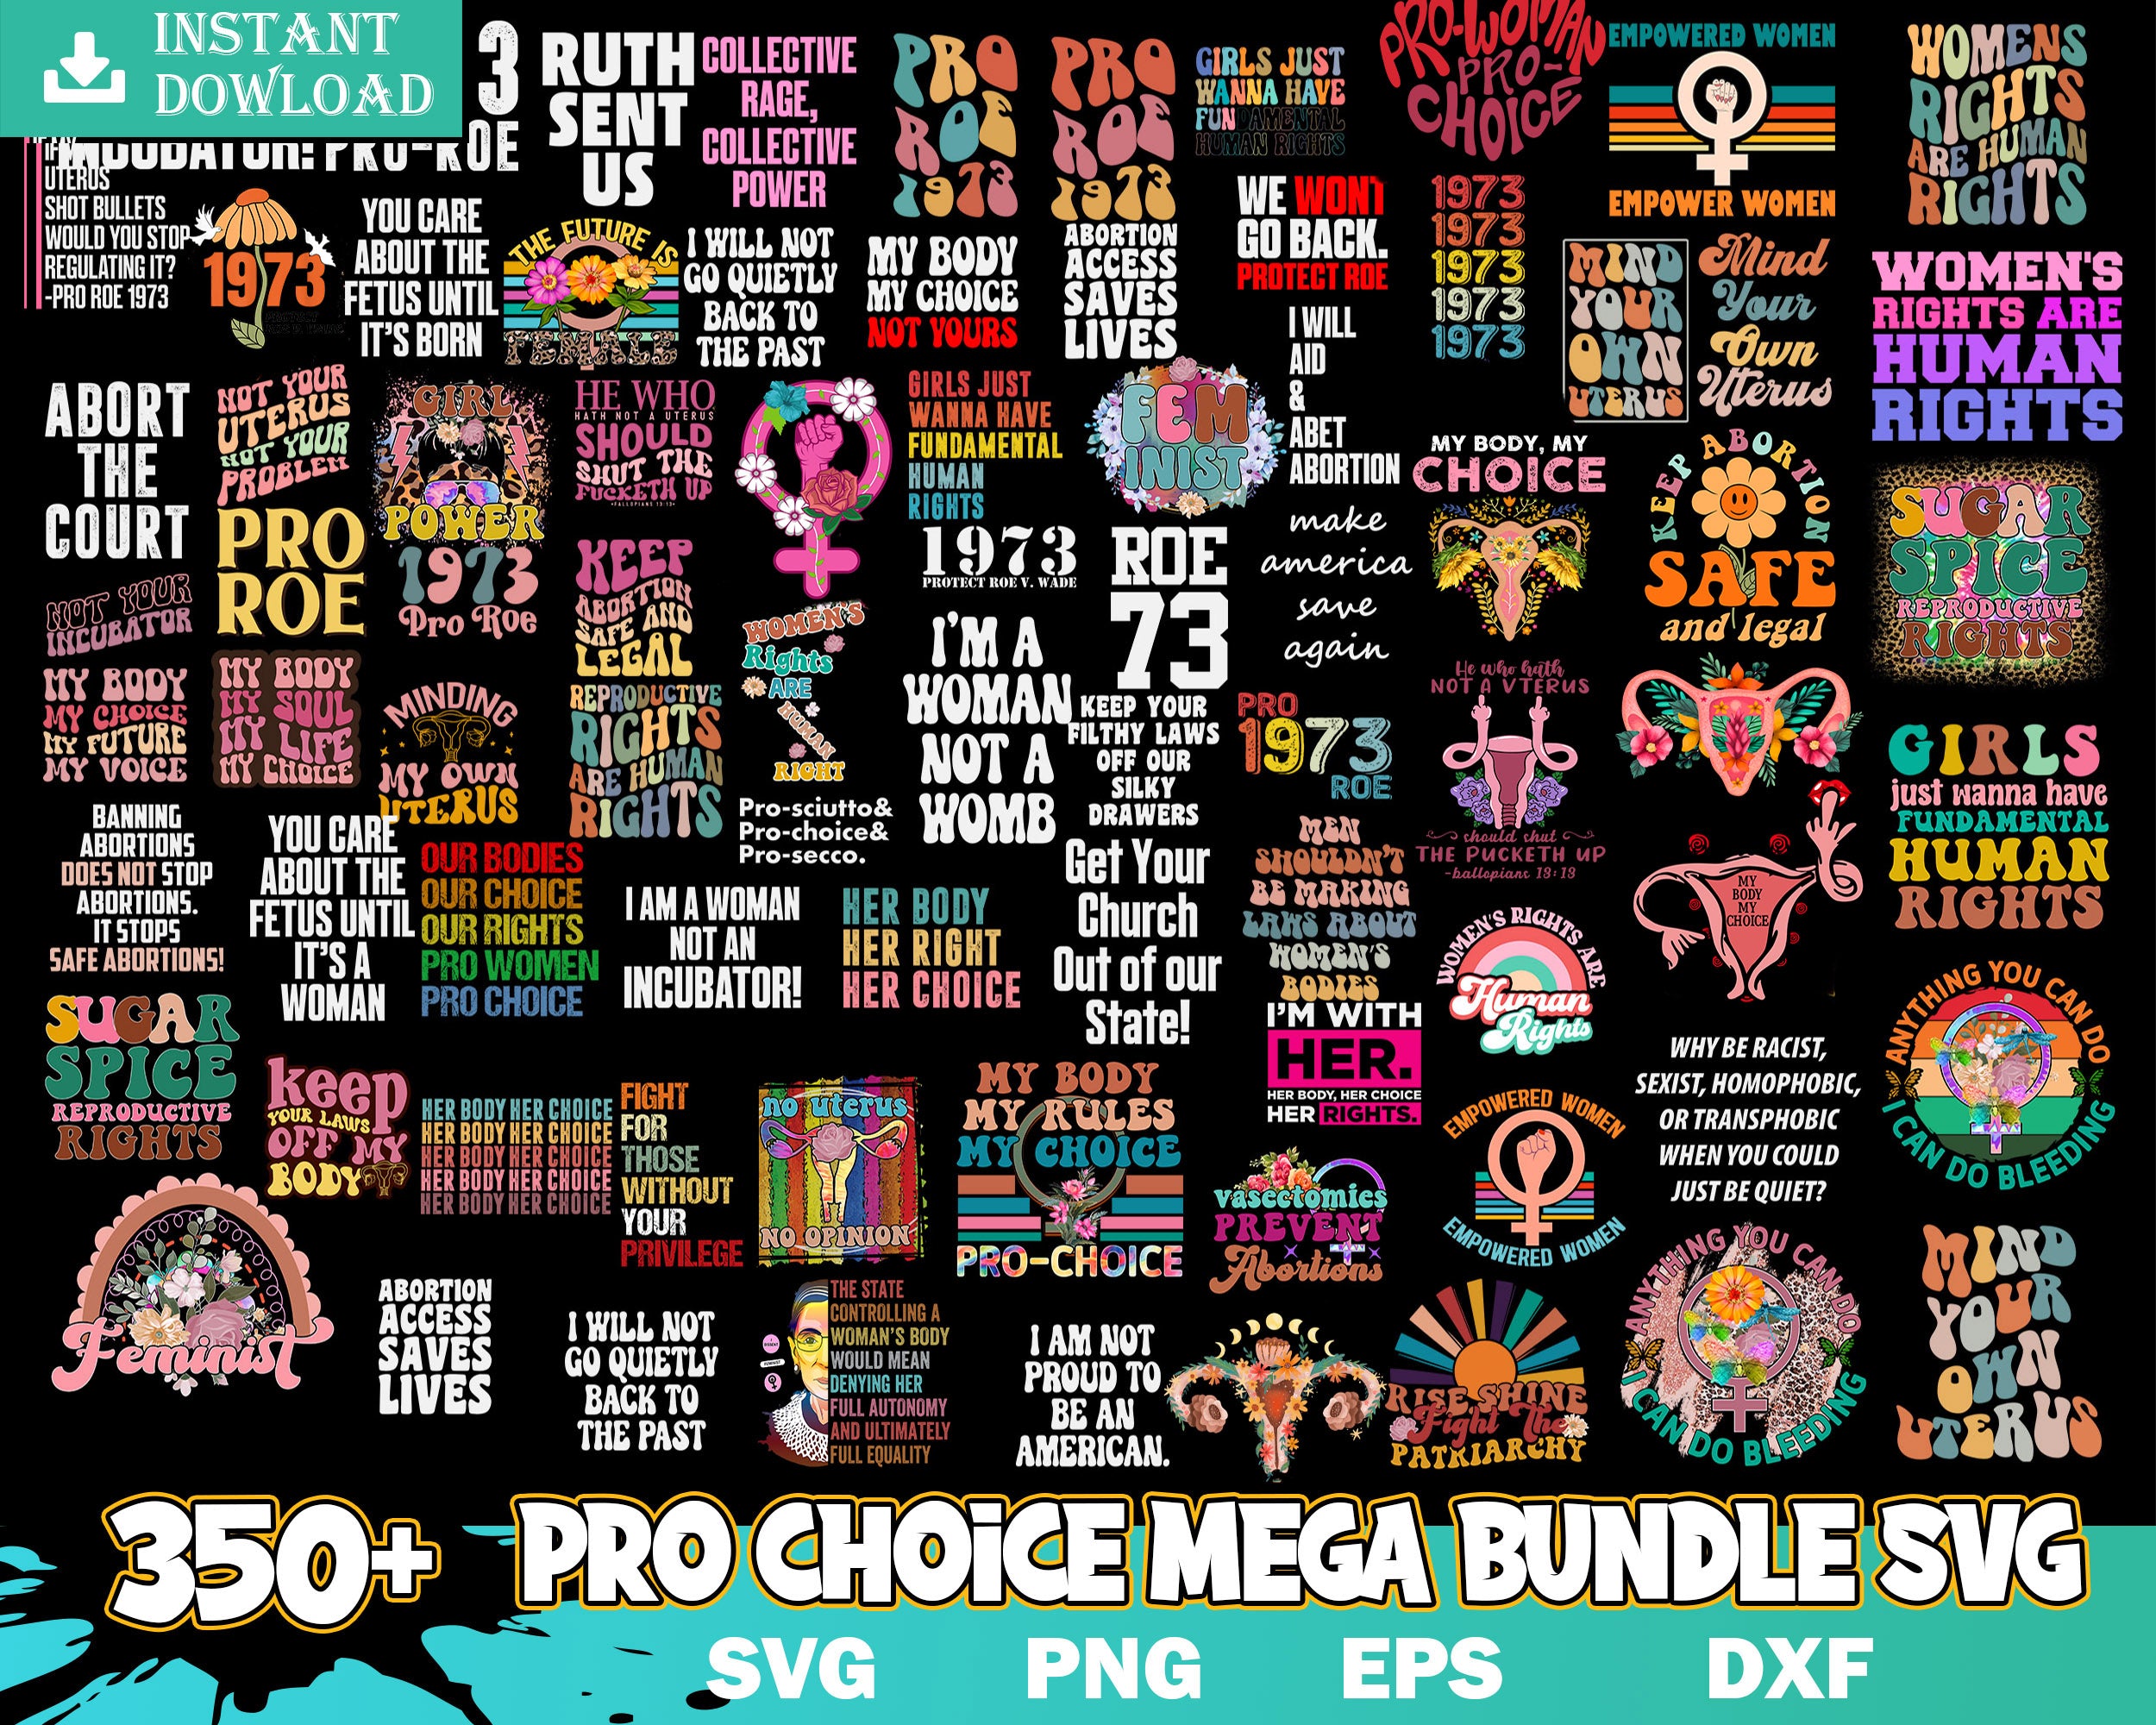 350+ Pro Choice Svg Mega Bundle - Digital download